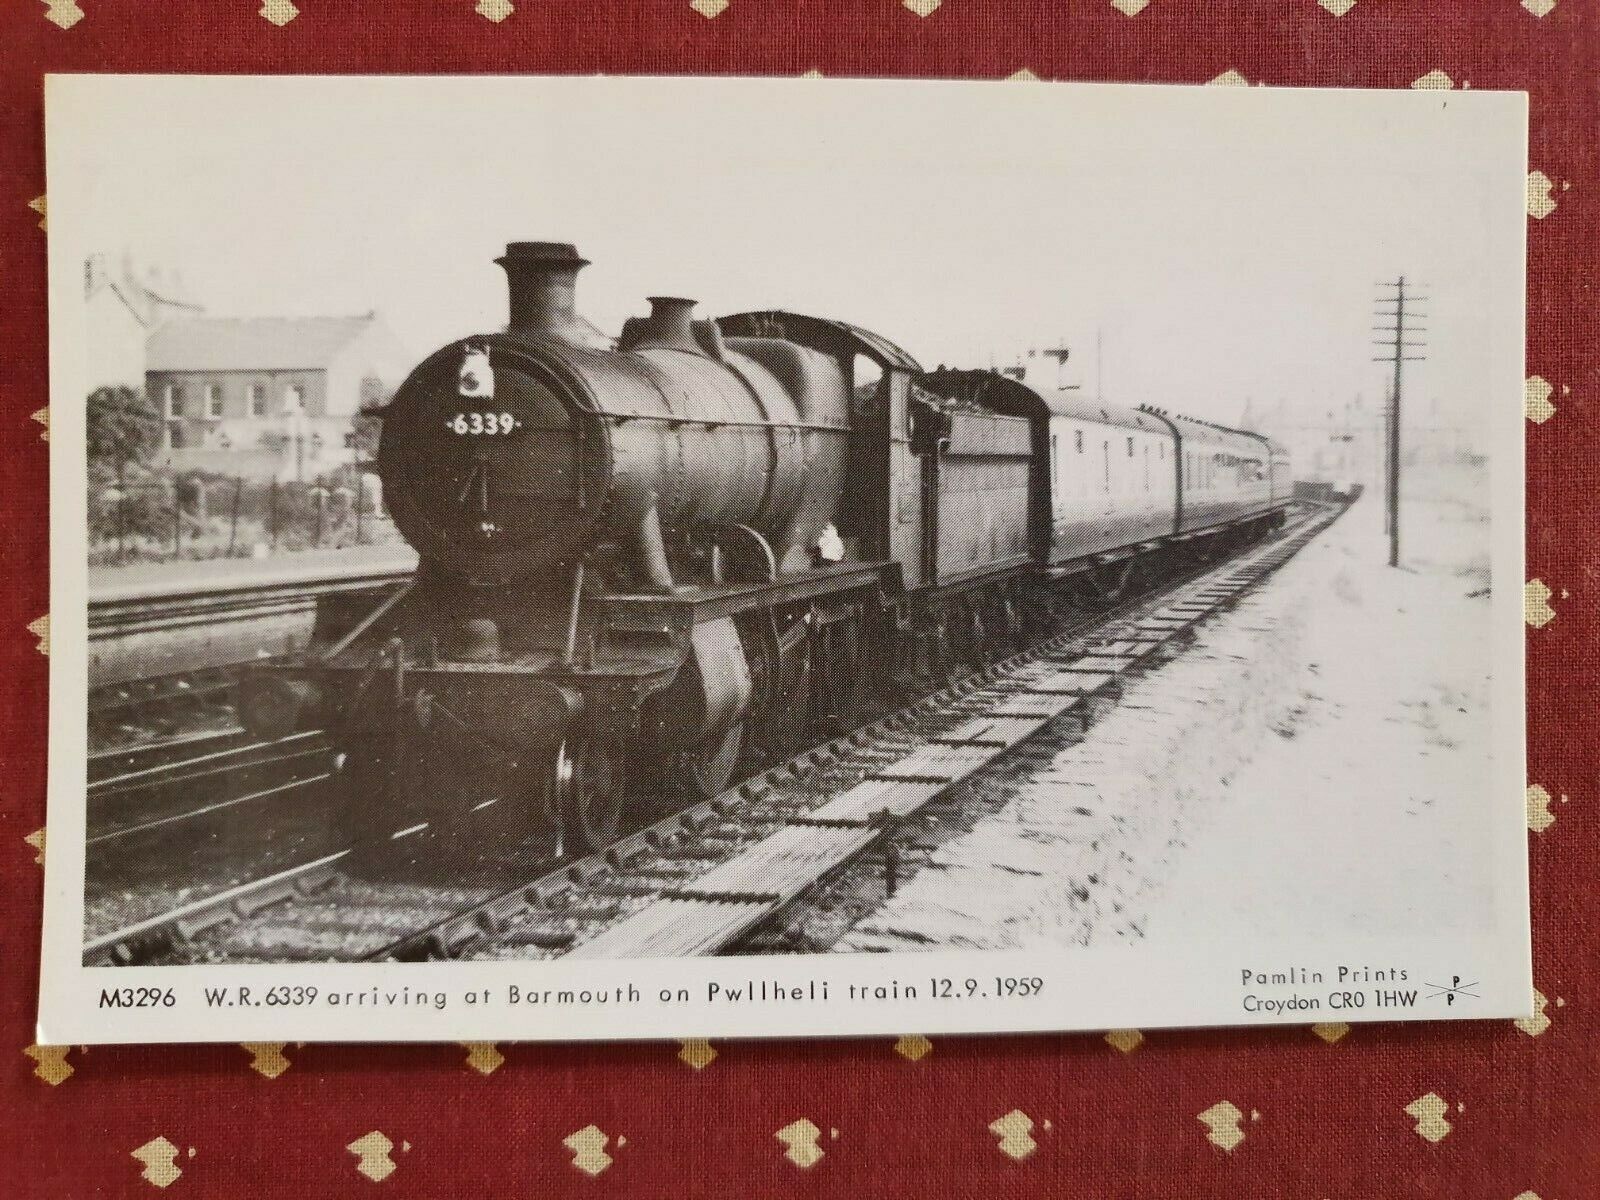 M3296 W.R6339 arriving Barmouth on Pwllheli  train  steam train postcard Pamlin